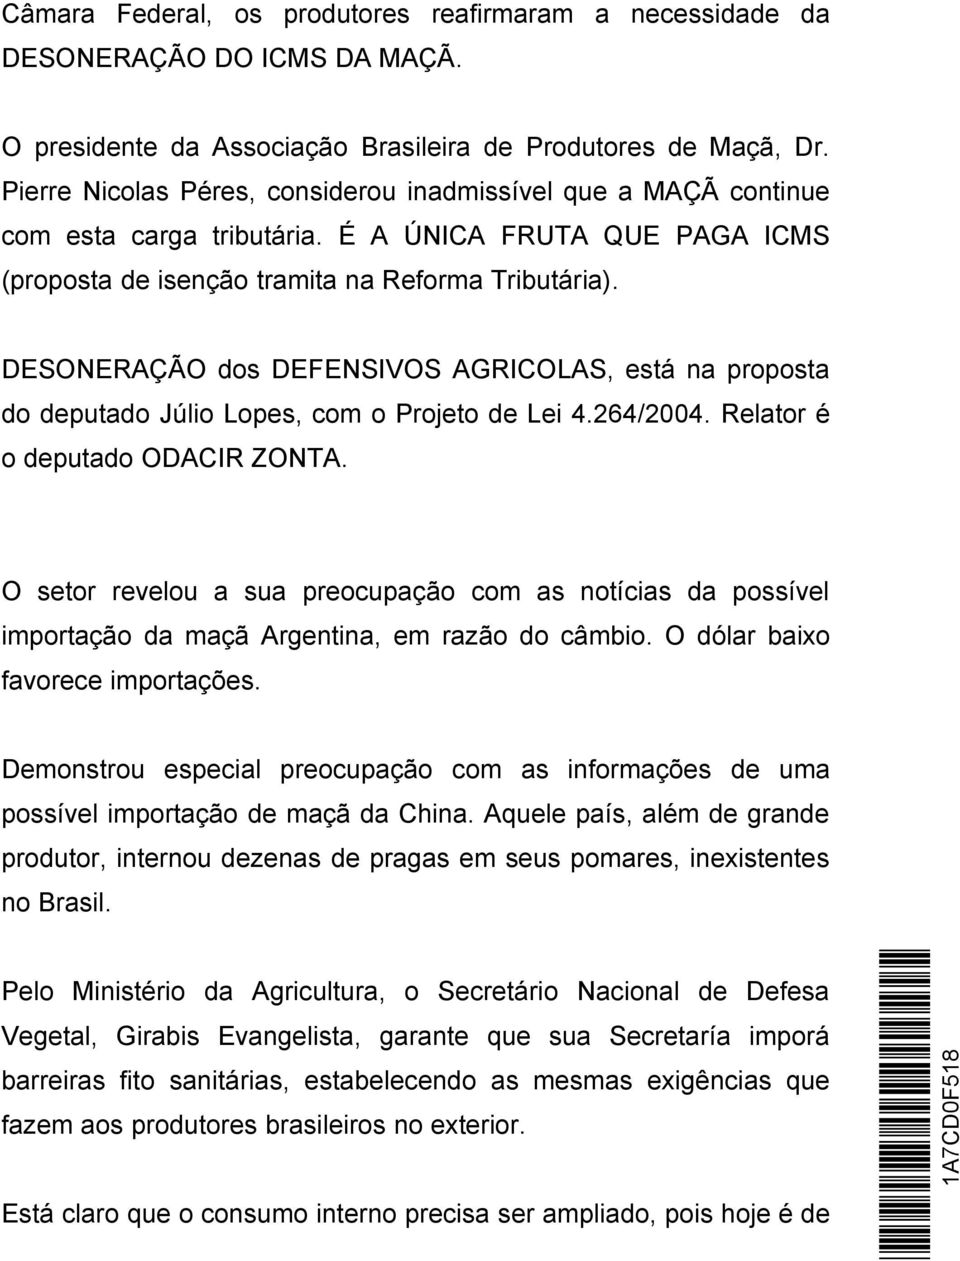 DESONERAÇÃO dos DEFENSIVOS AGRICOLAS, está na proposta do deputado Júlio Lopes, com o Projeto de Lei 4.264/2004. Relator é o deputado ODACIR ZONTA.